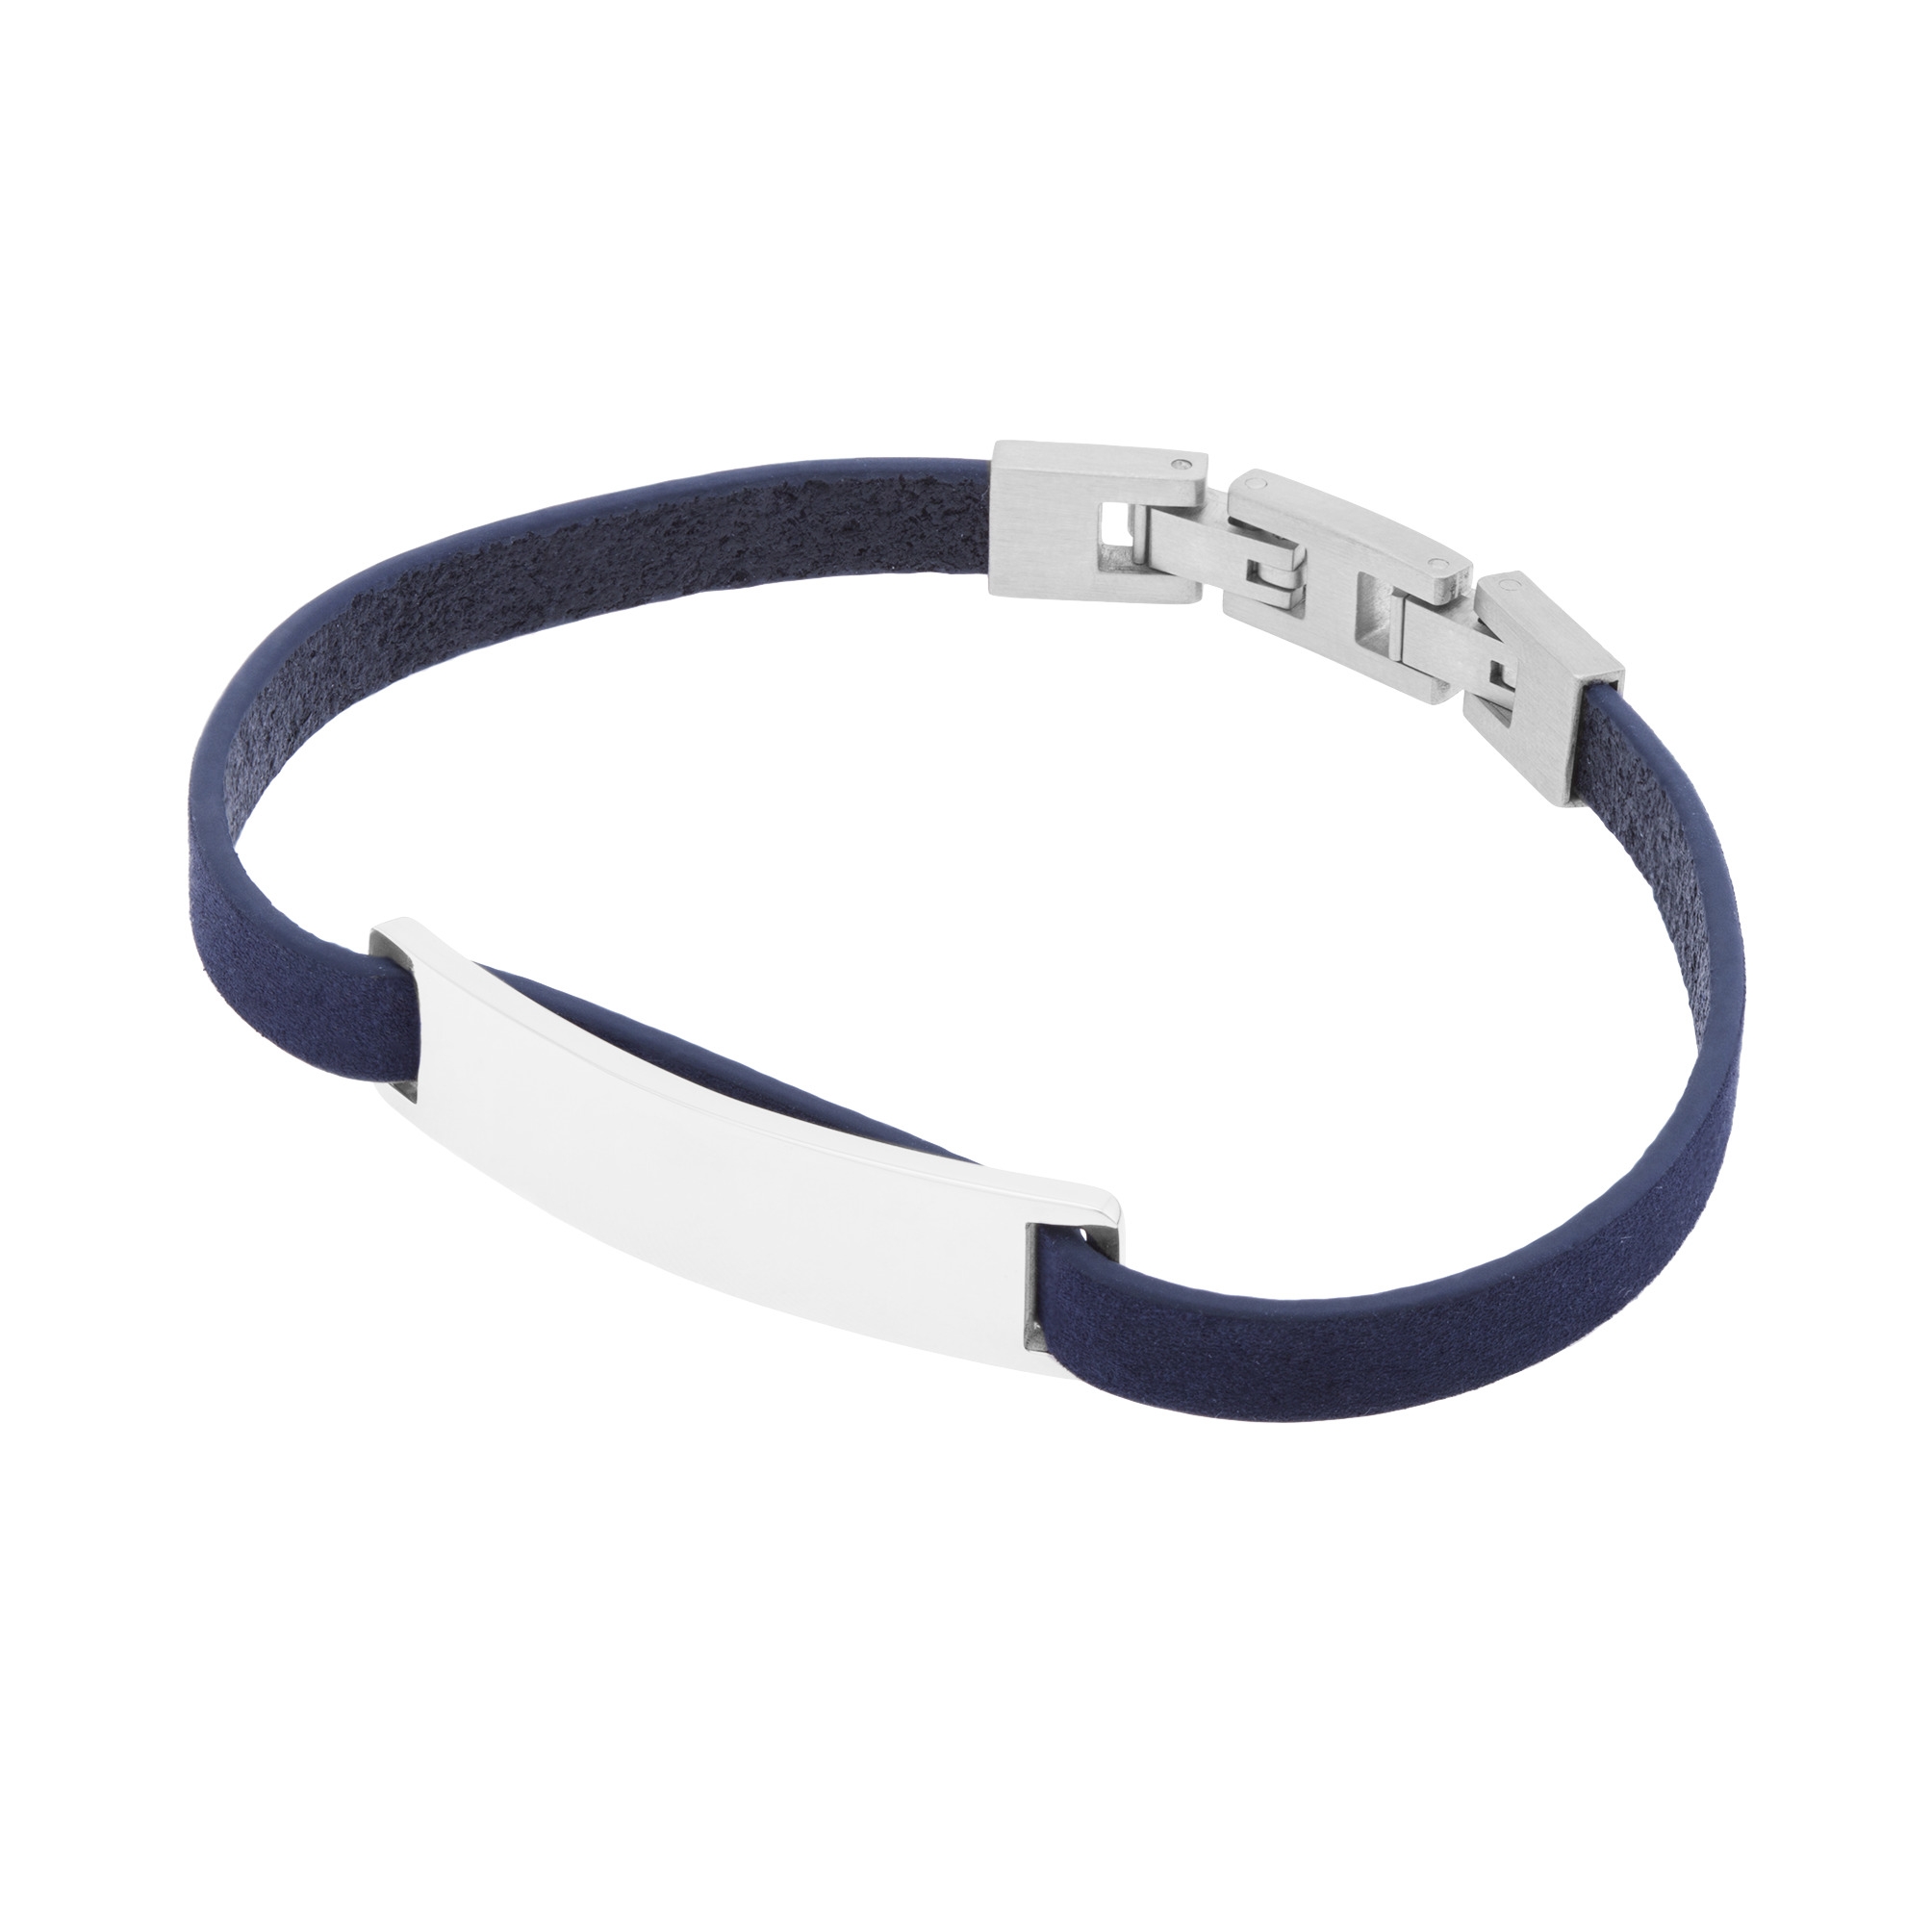 Bracelet Homme HB145006 en Cuir bleu Rochet Rochet - Bracelet sur Lookéor